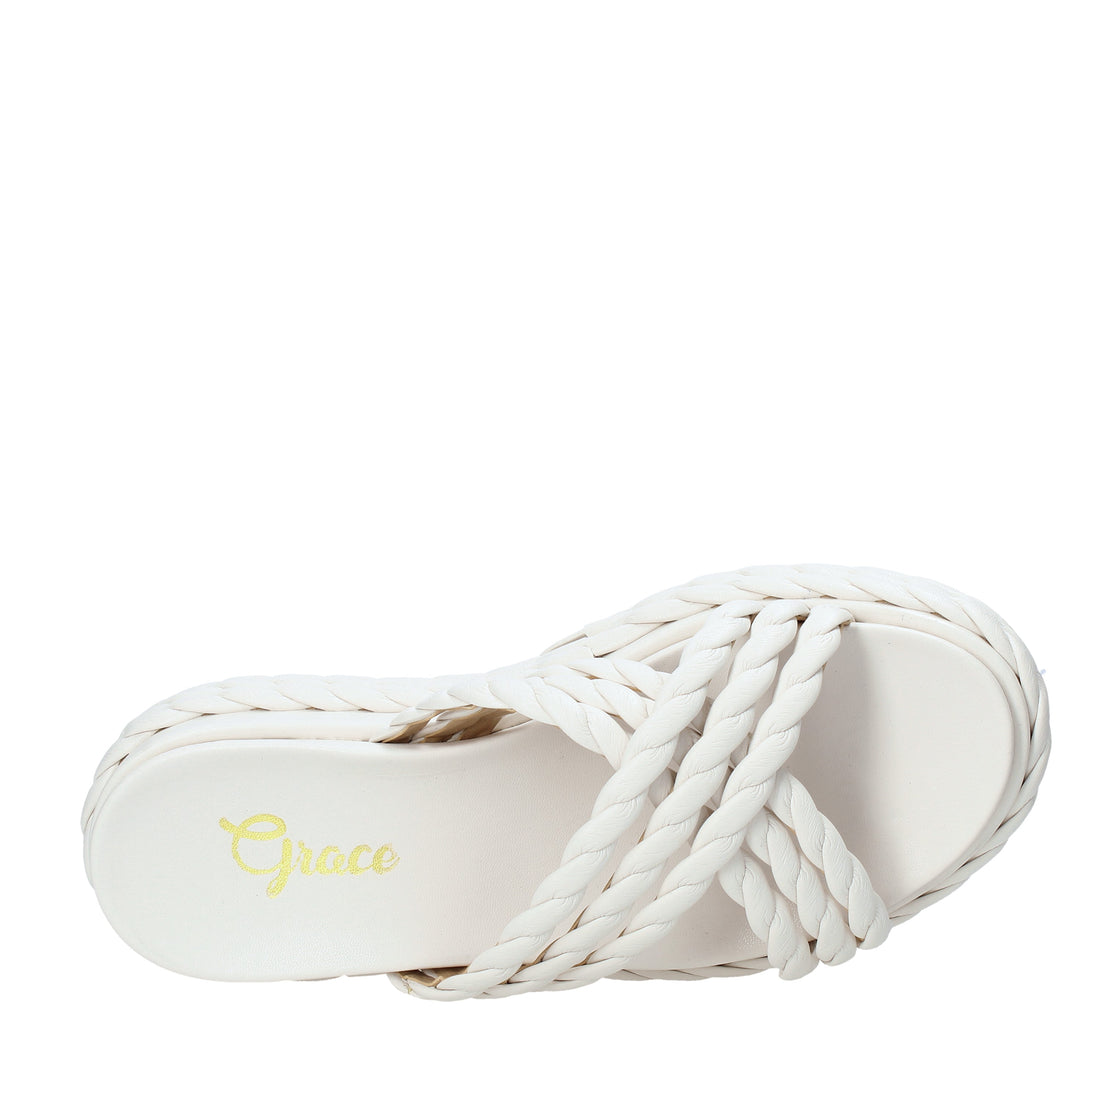 Ciabatte Bianco Grace Shoes